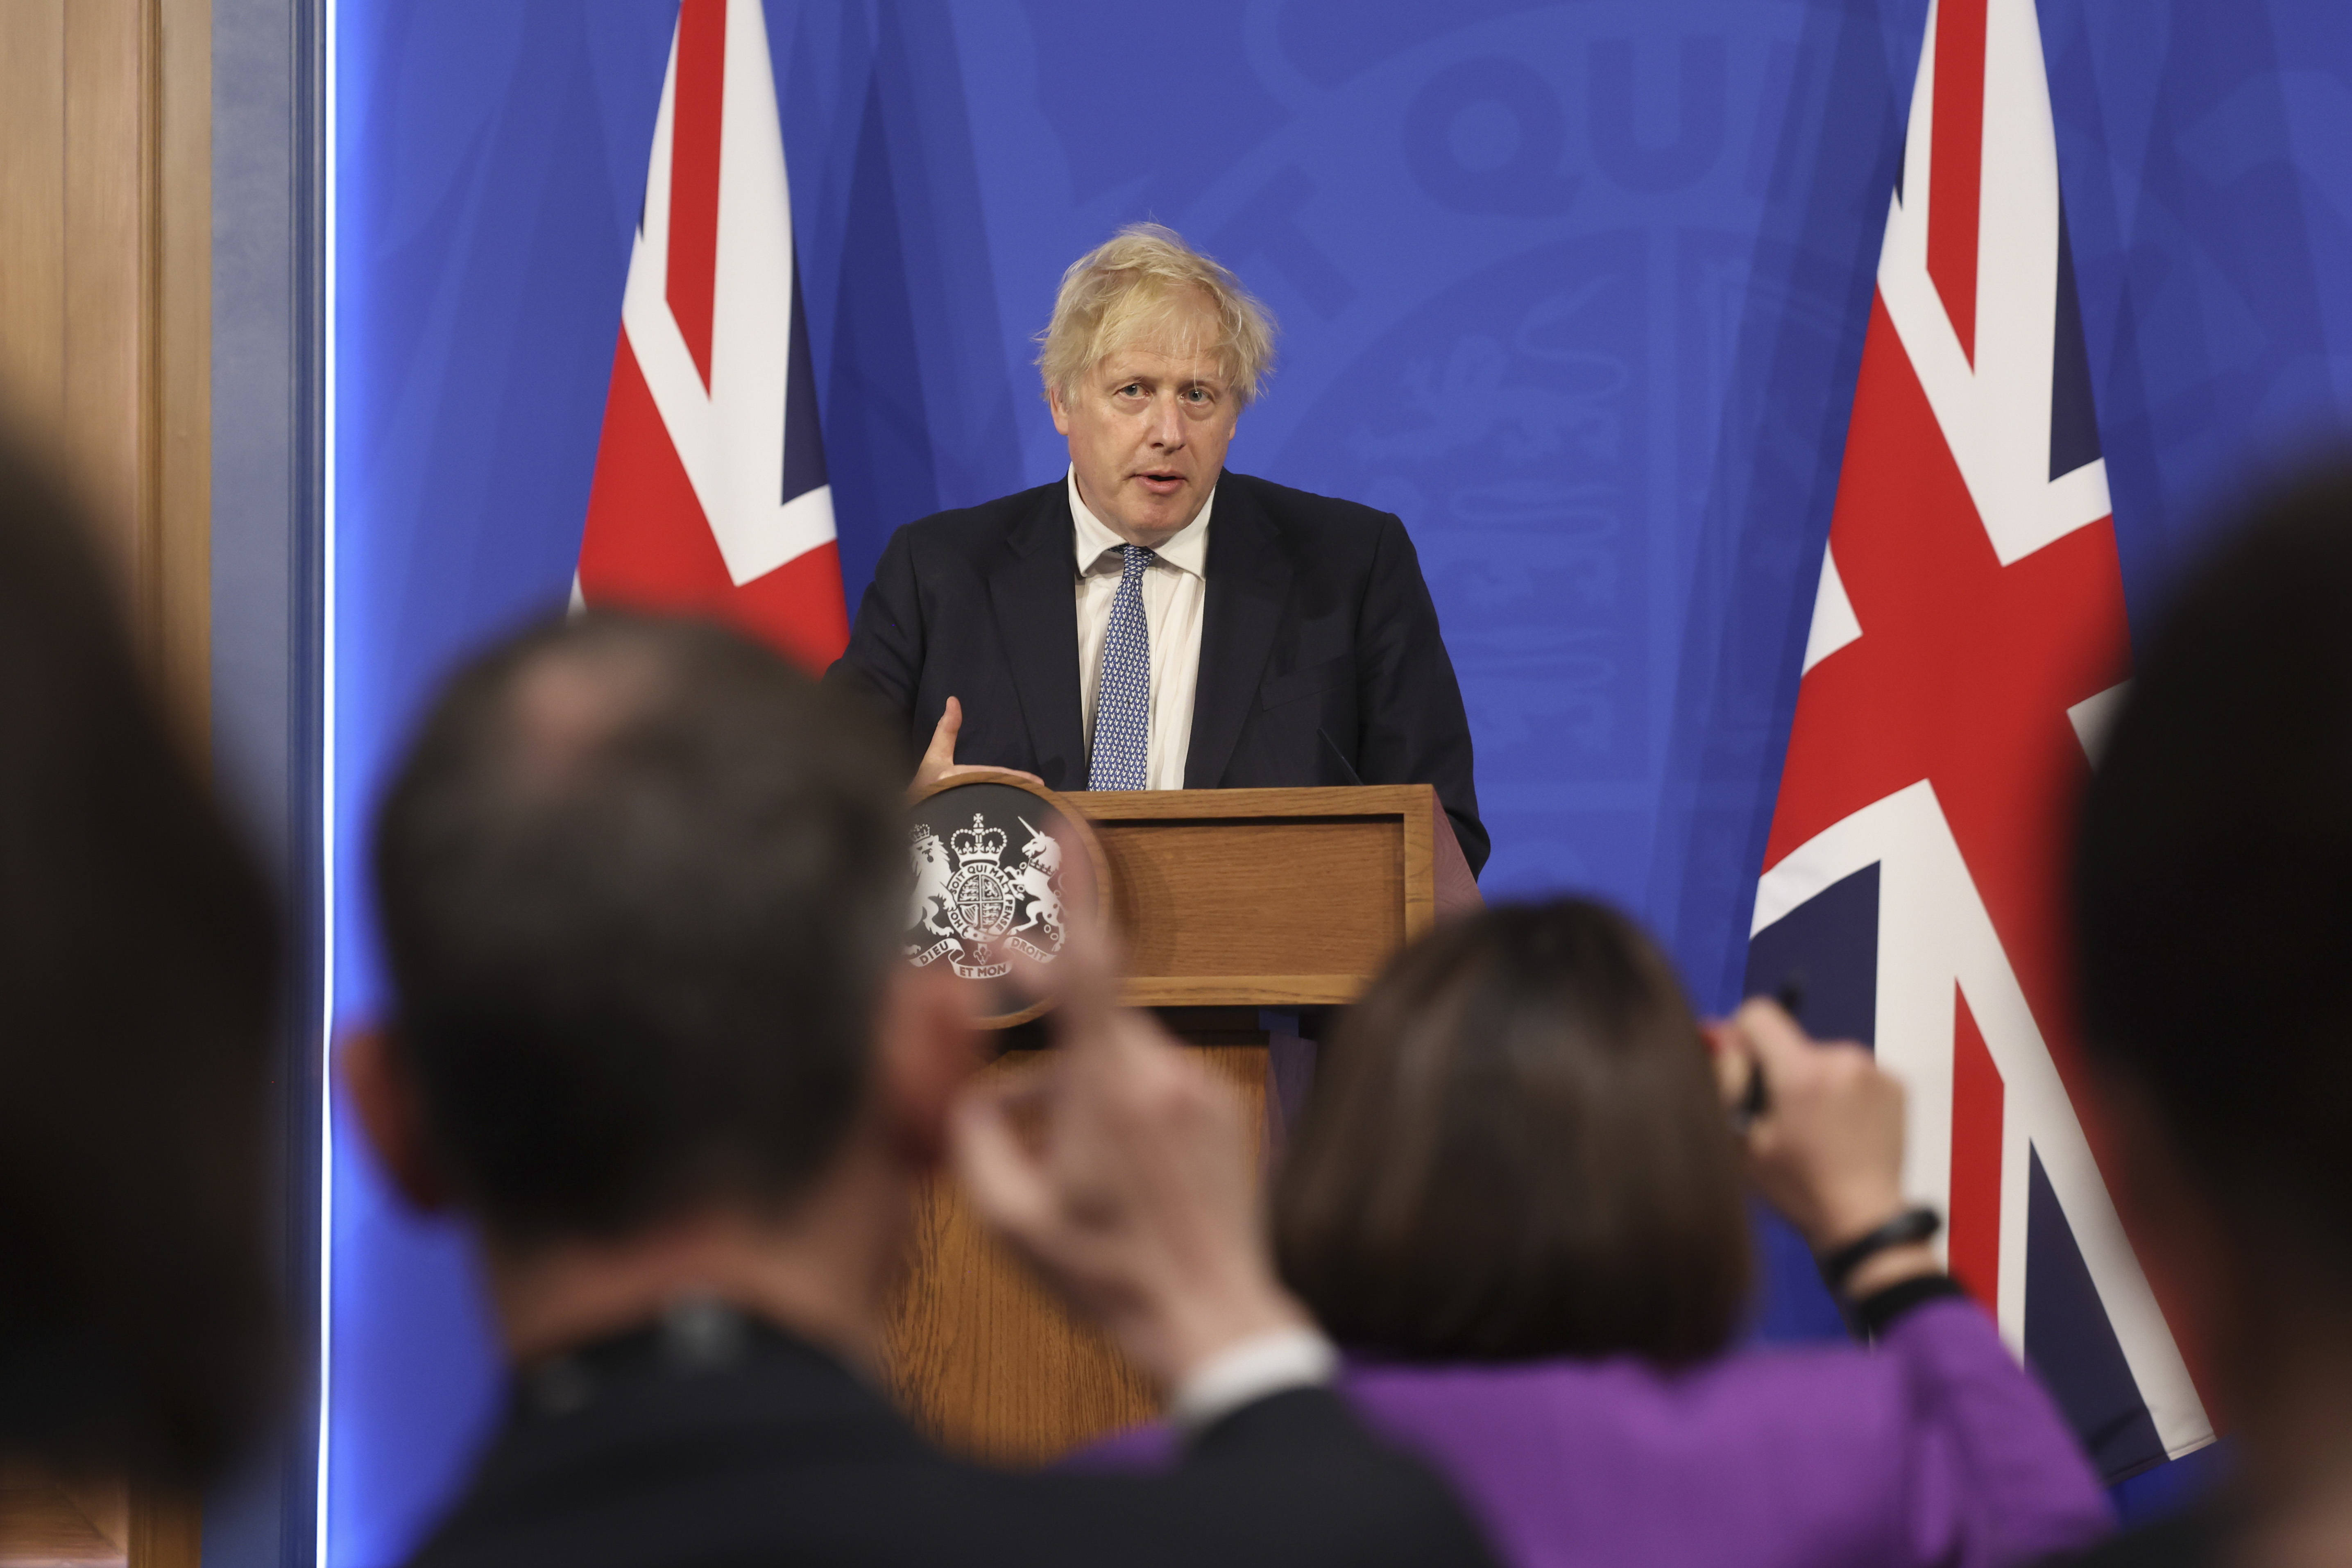 府供图)这是5月25日在伦敦拍摄的英国首相约翰逊出席新闻发布会的照片